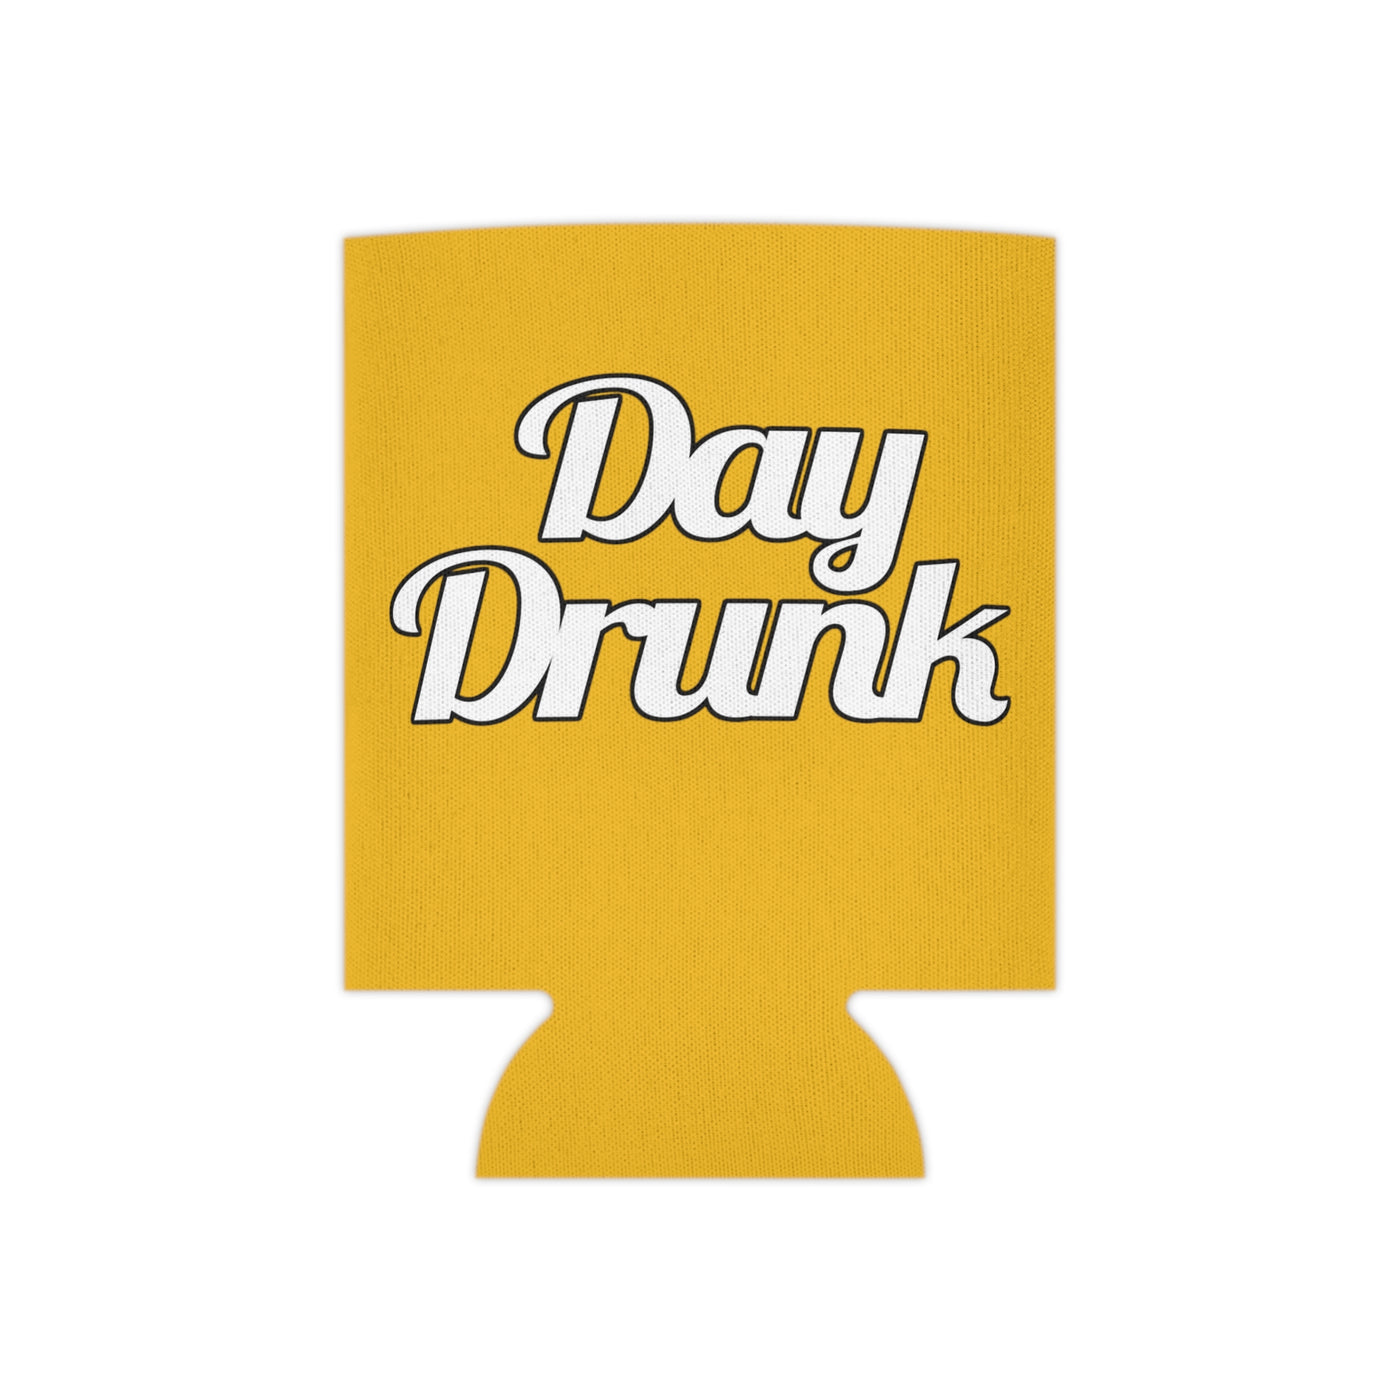 Day Drunk